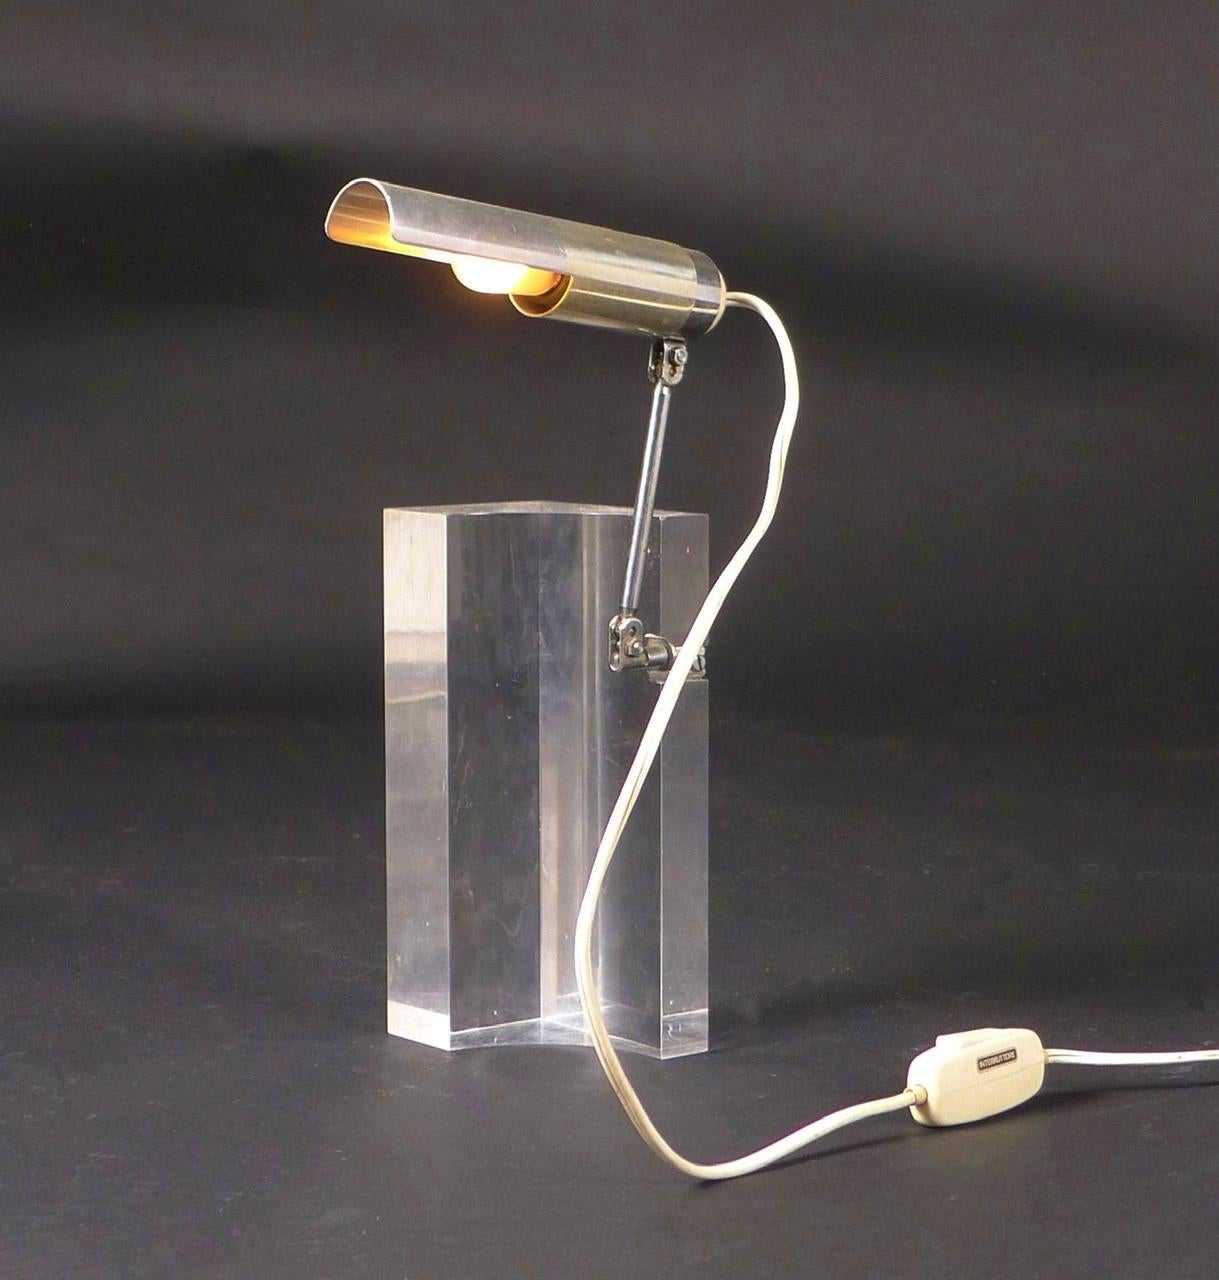 Filippo Panseca pour Arteluce, lampe de bureau articulée, années 1960.

Le design comprend un bloc de plexiglas transparent avec un bras et un abat-jour articulés en aluminium.  Le bras et l'abat-jour se règlent indépendamment l'un de l'autre pour